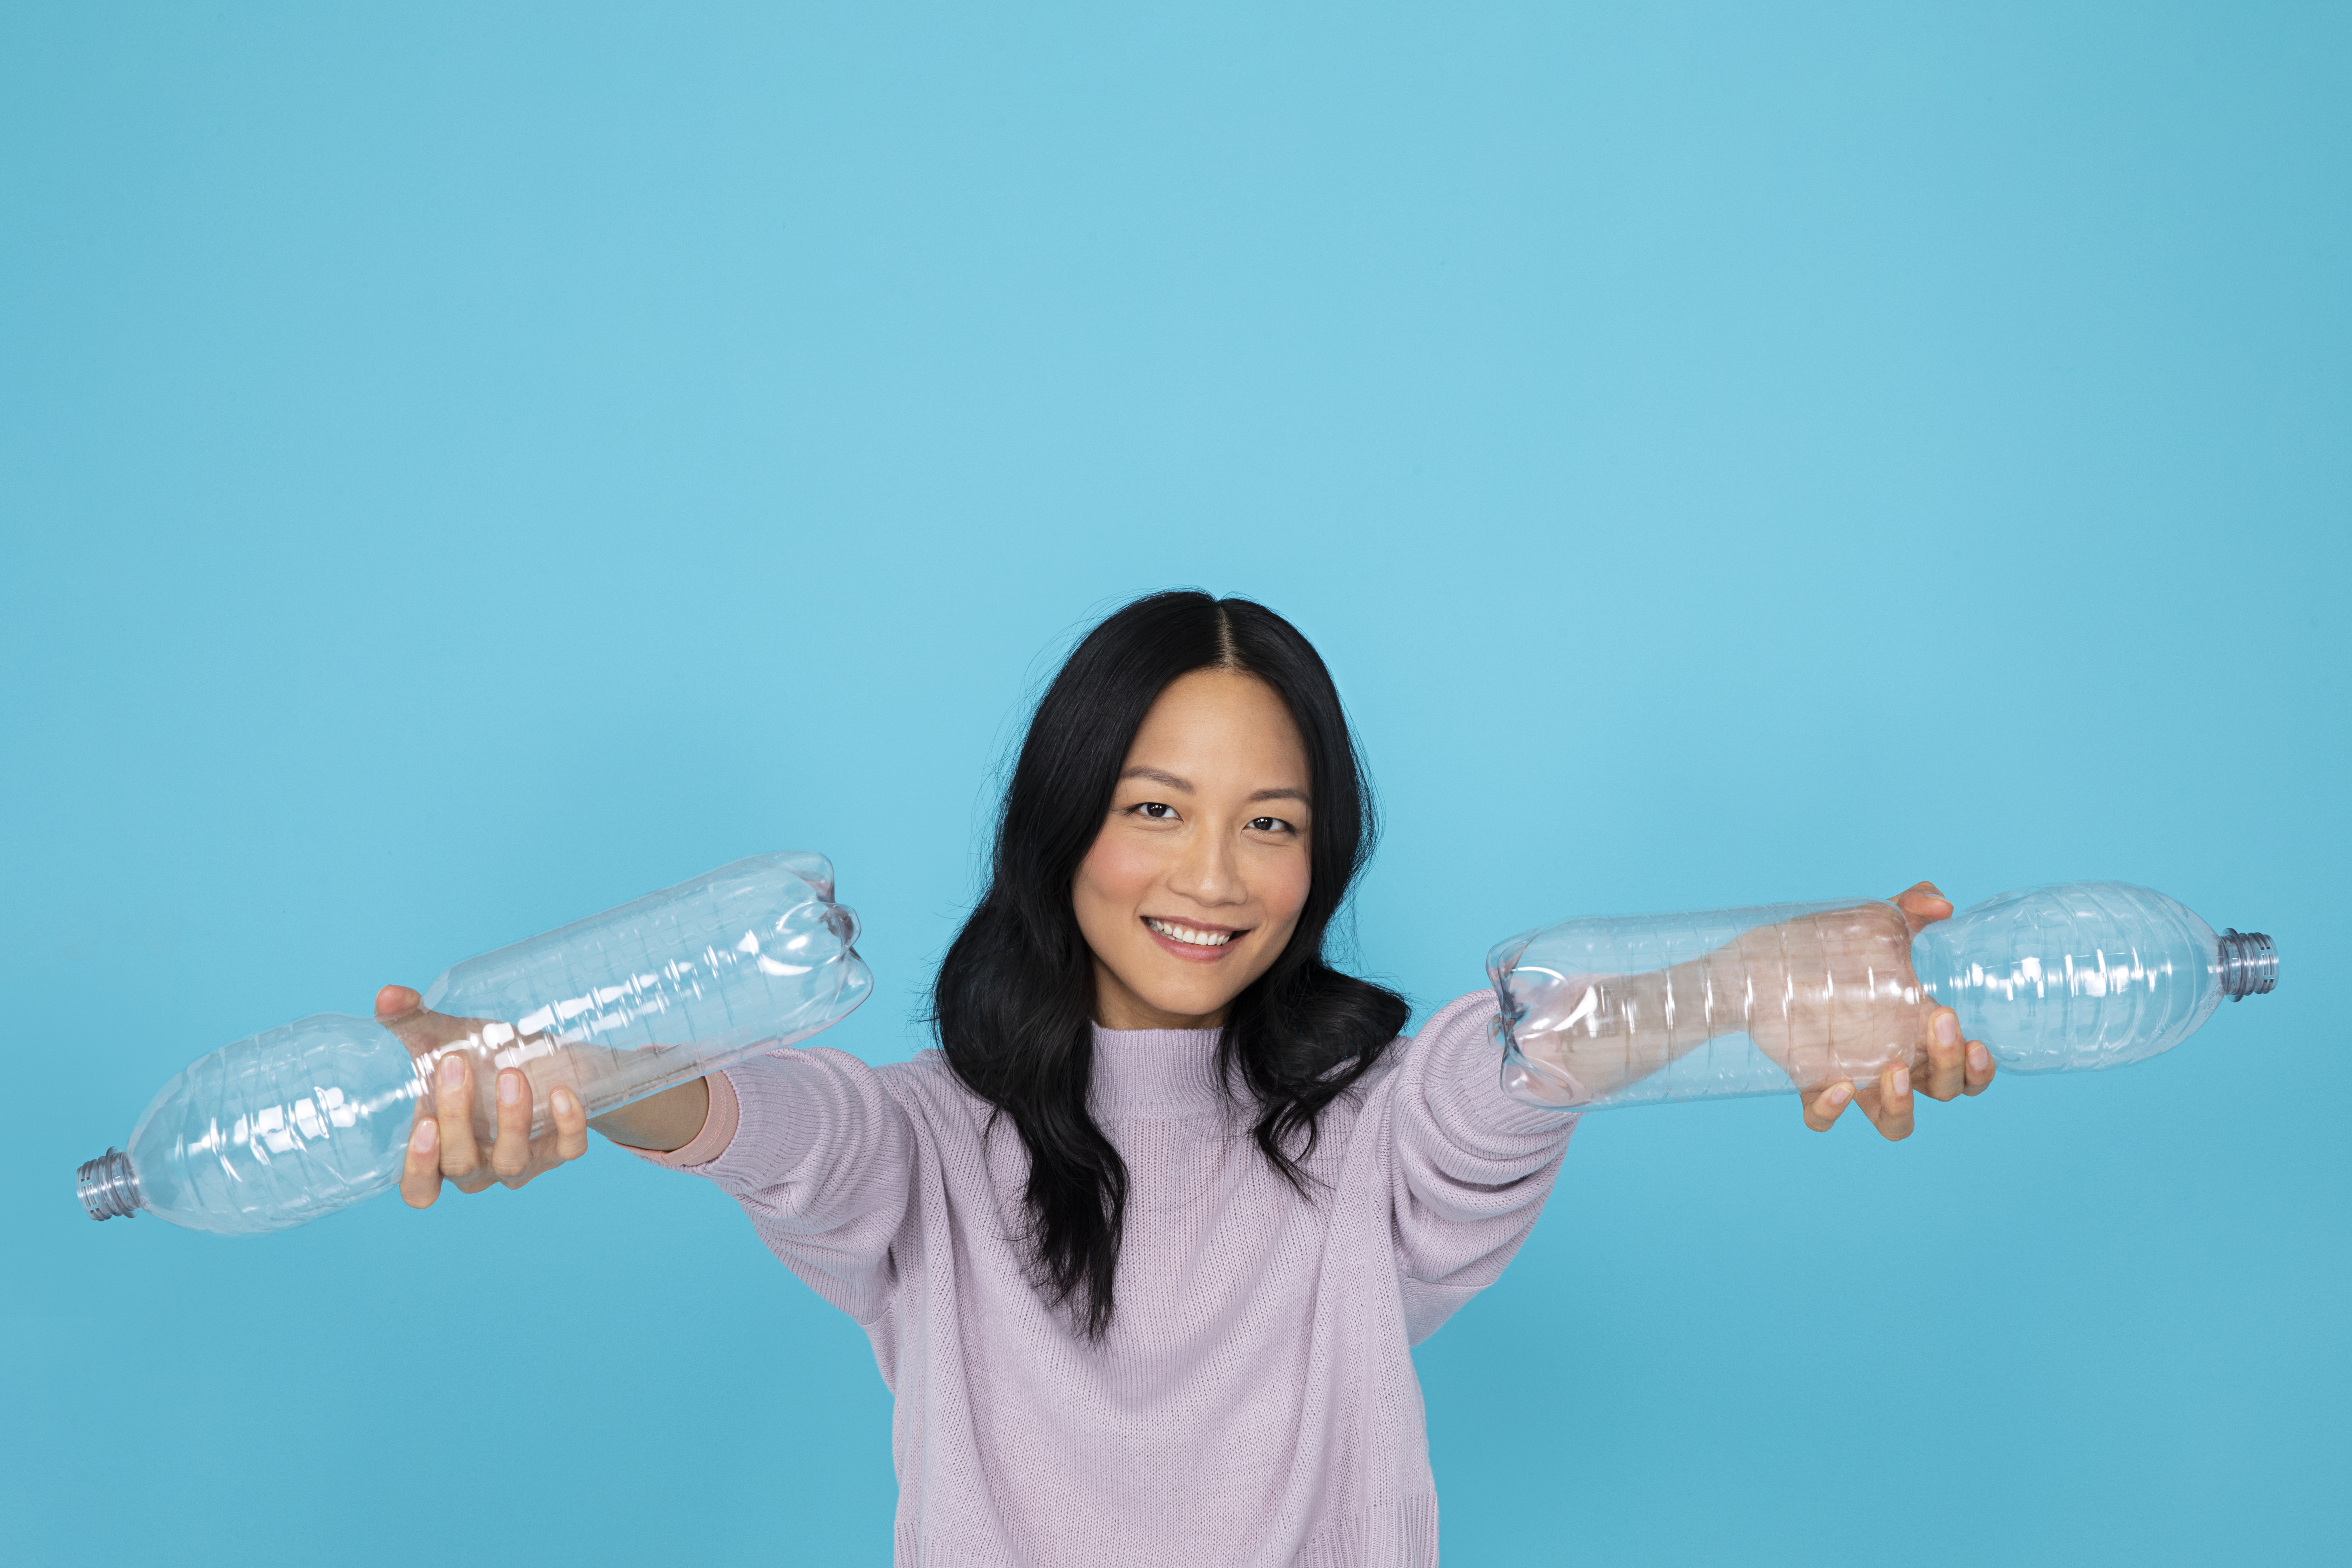 Asiatisches Mädchen hält PET-Flaschen